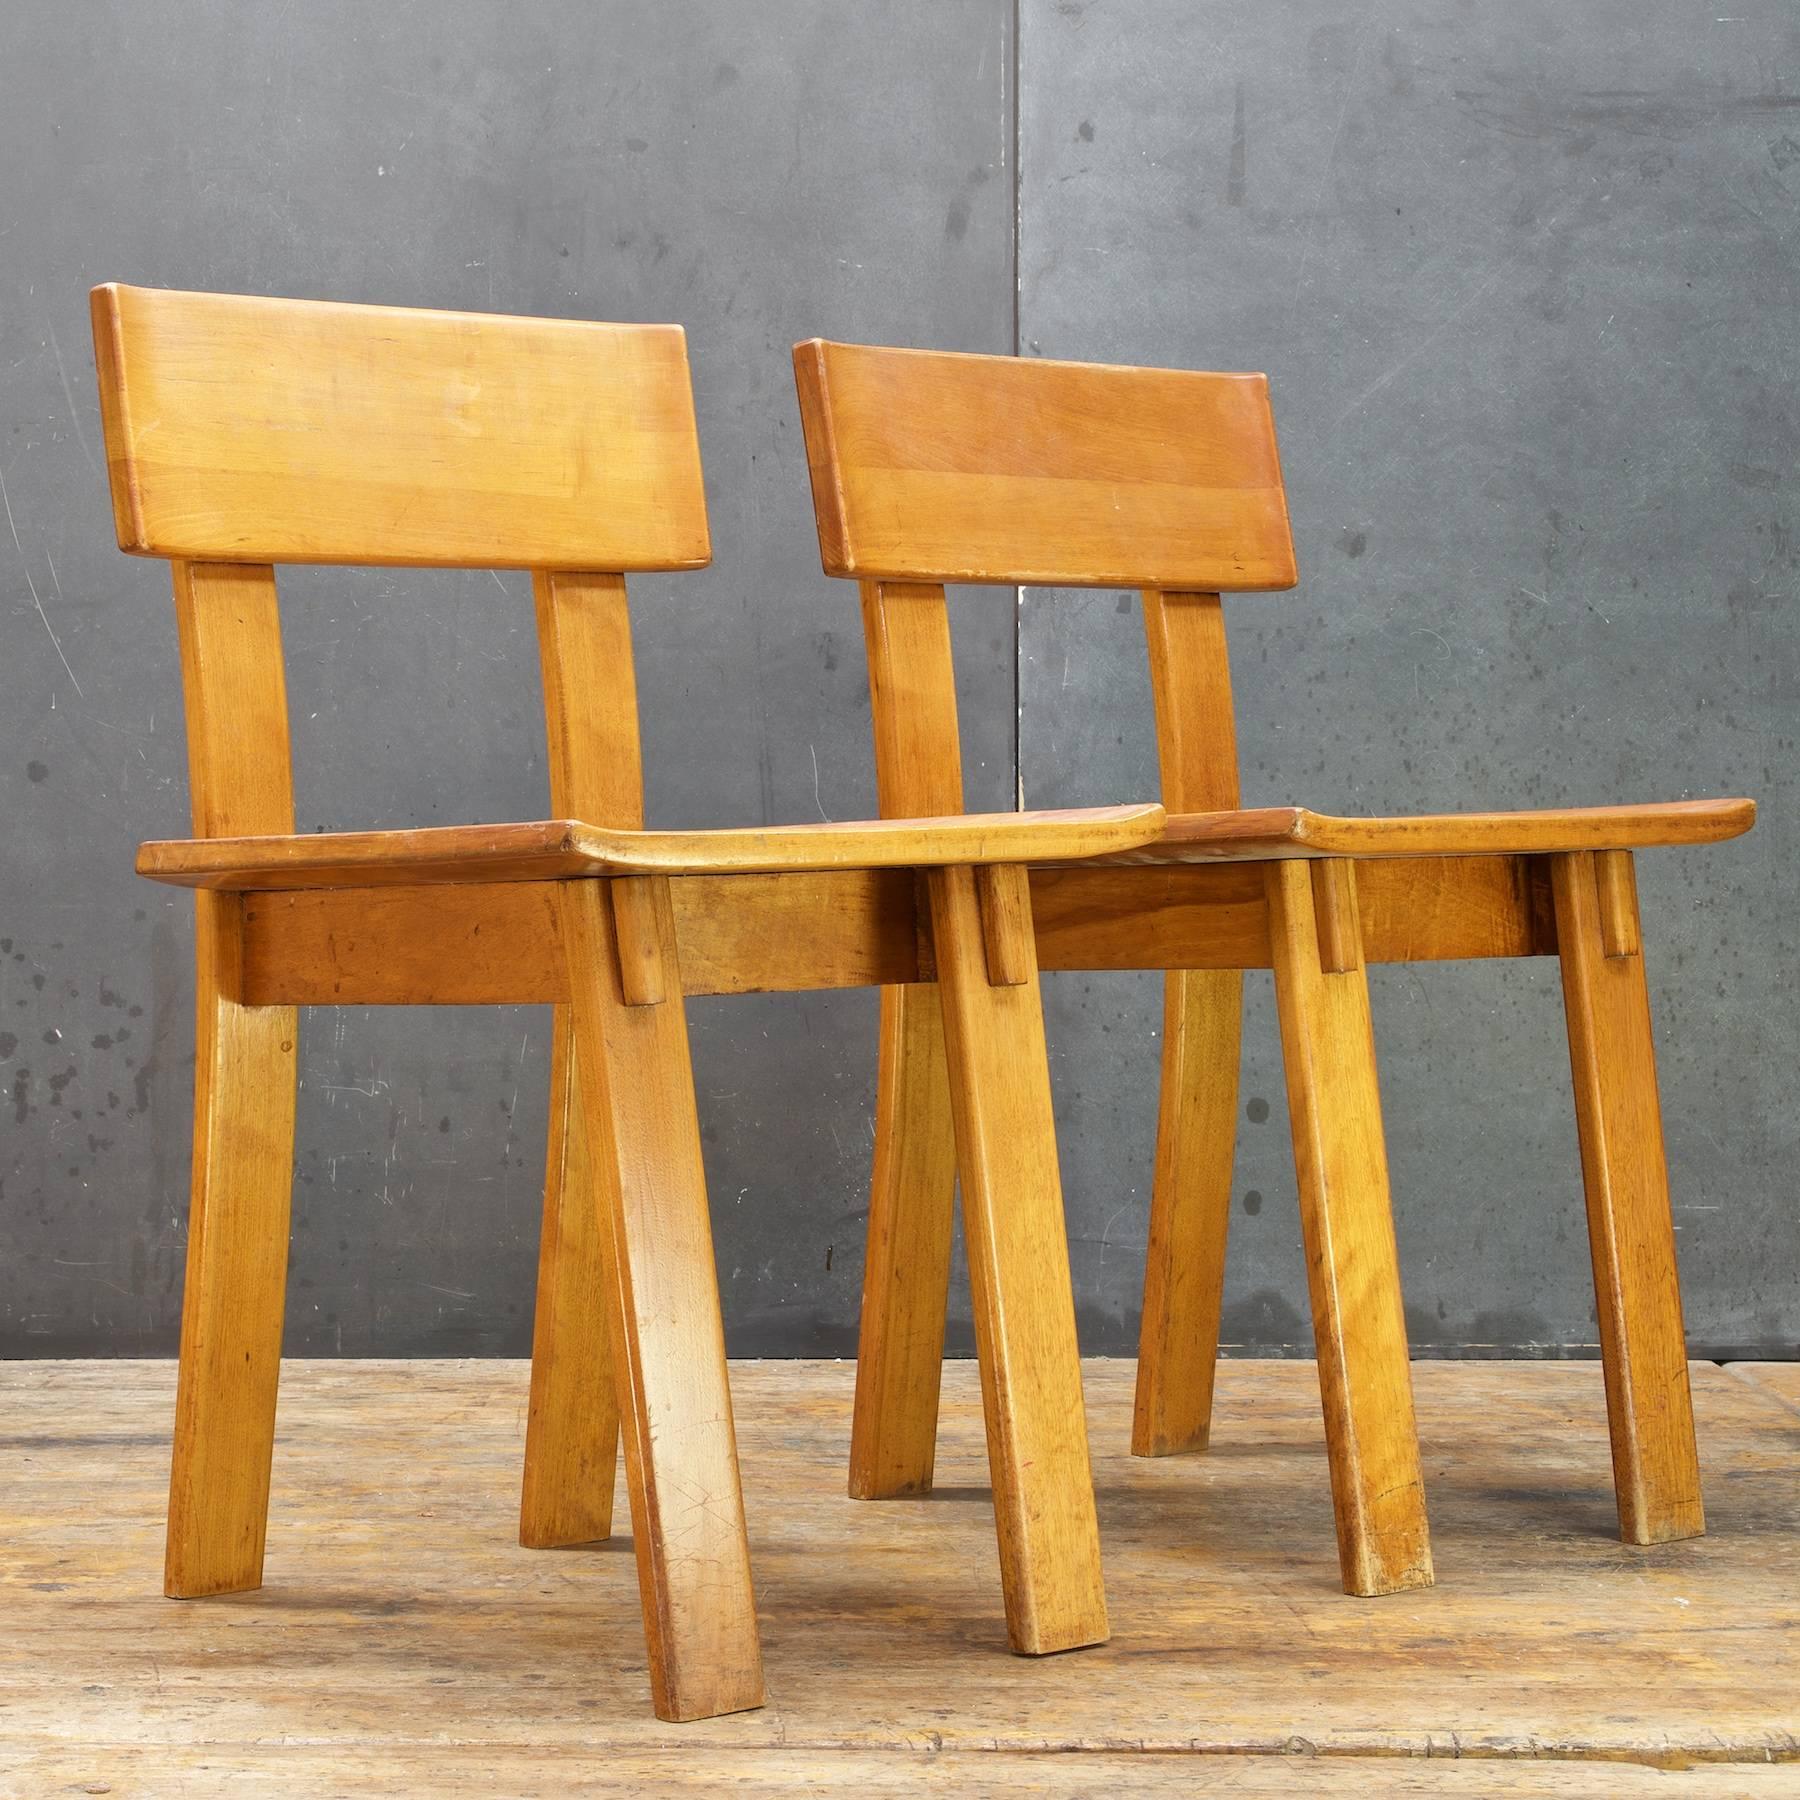 Important modèle de chaise de Russel Wright, illustrant la confluence des styles : Art Déco, Streamlined Moderne, style européen et style de Shanghai, tous convergeant et reflétant la nouvelle ère mécanisée et moderne.

Ces chaises ont été le